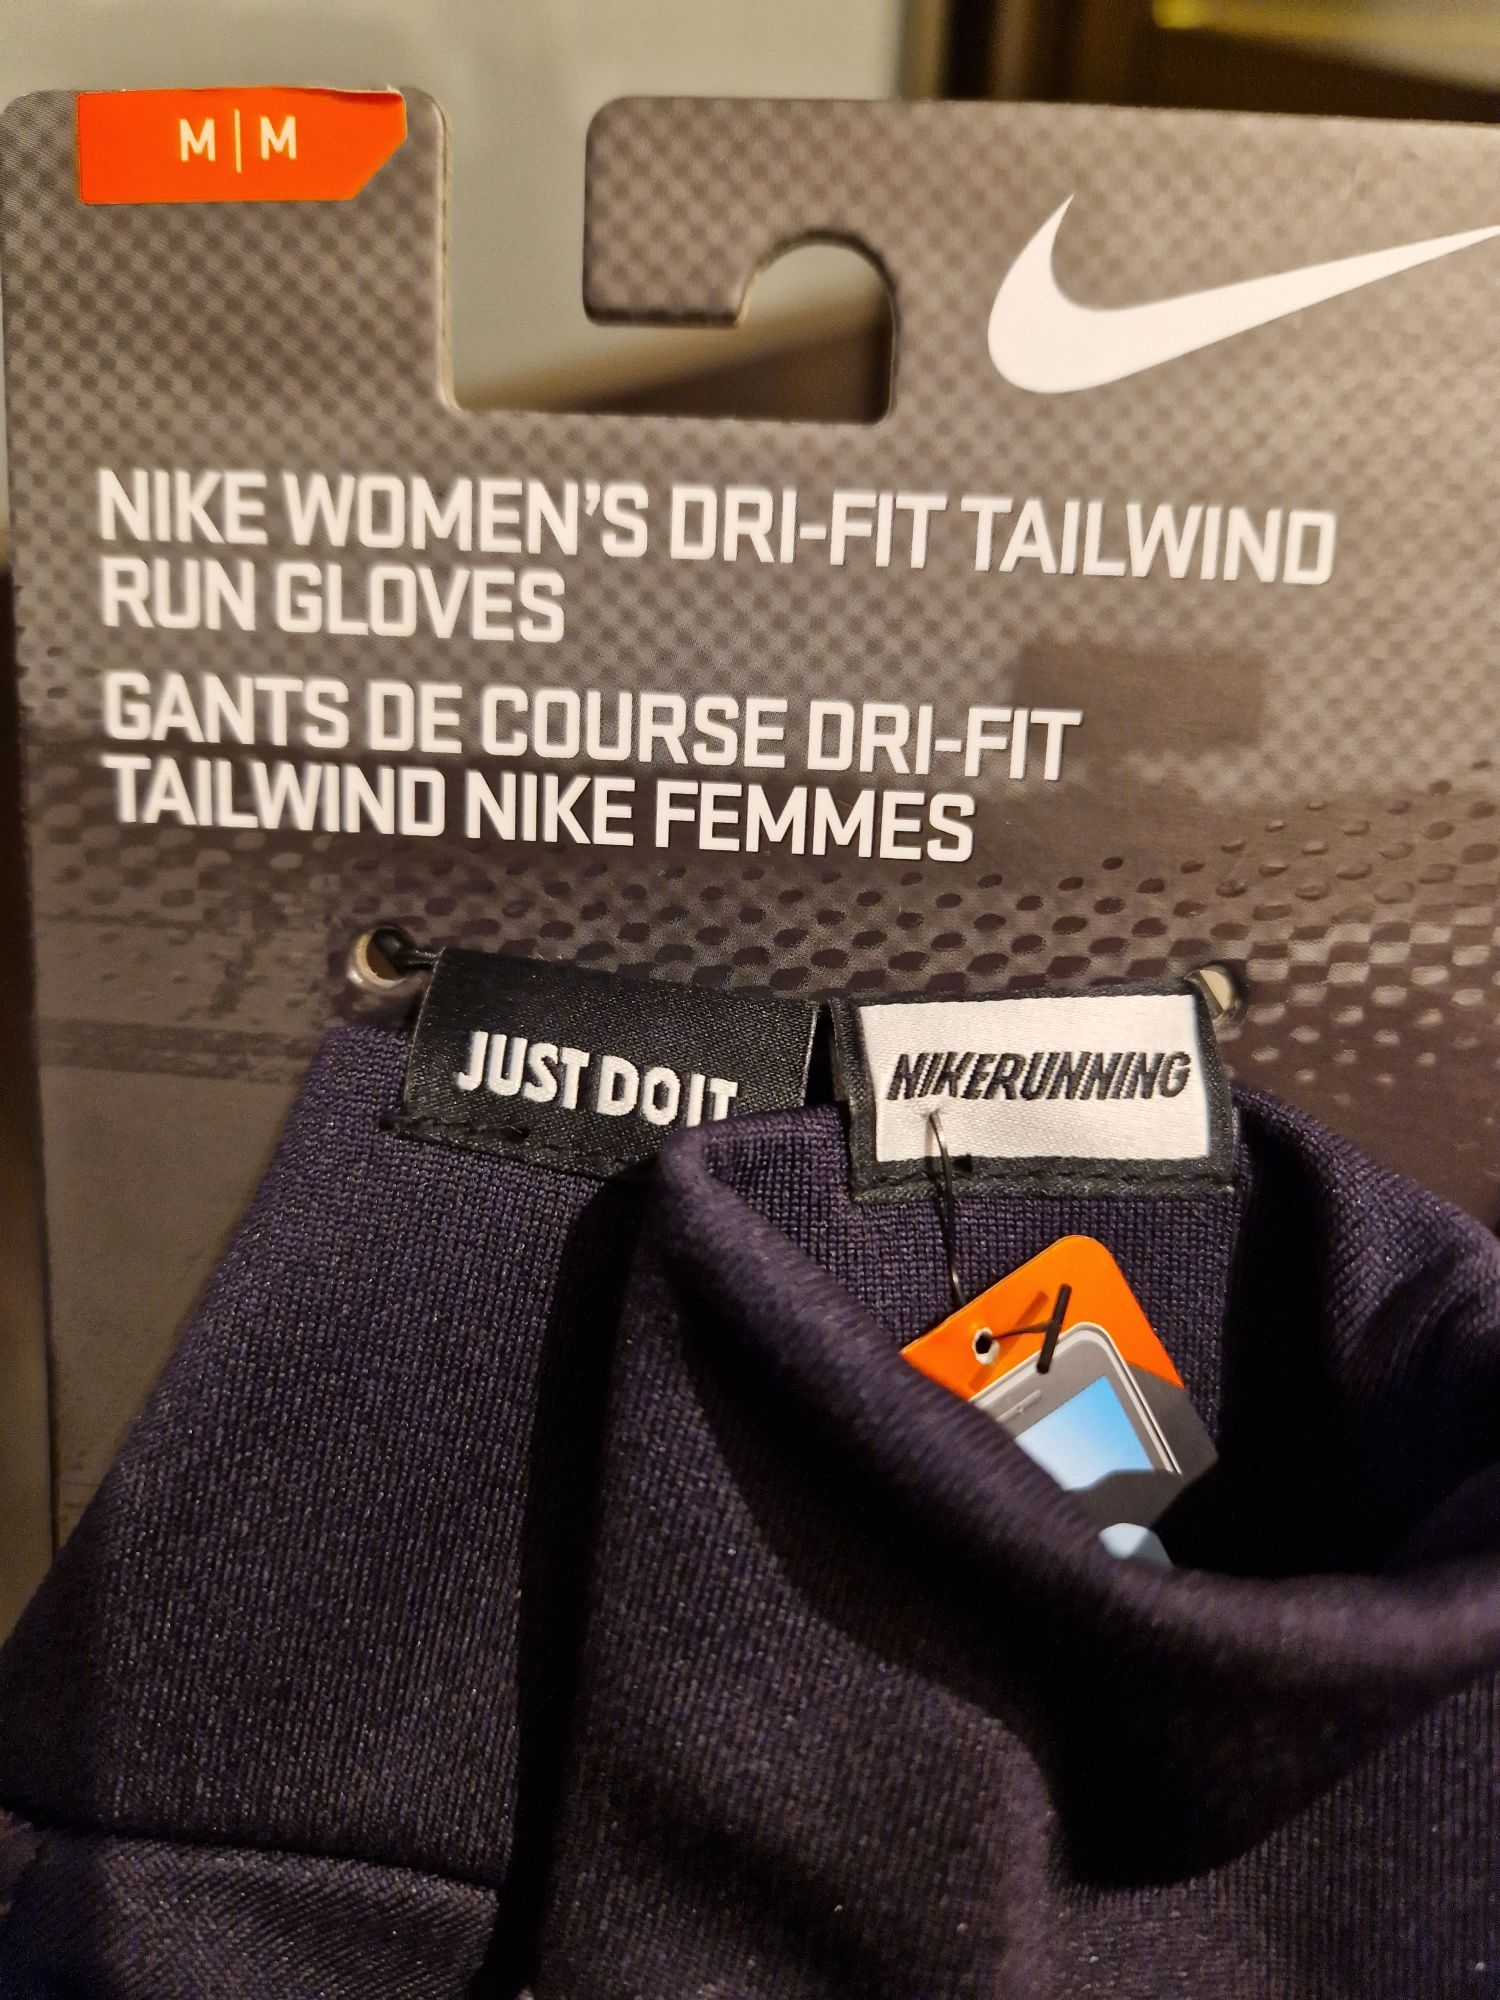 Nowe oryginalne rekawiczki Nike do biegania  rozmiar M.